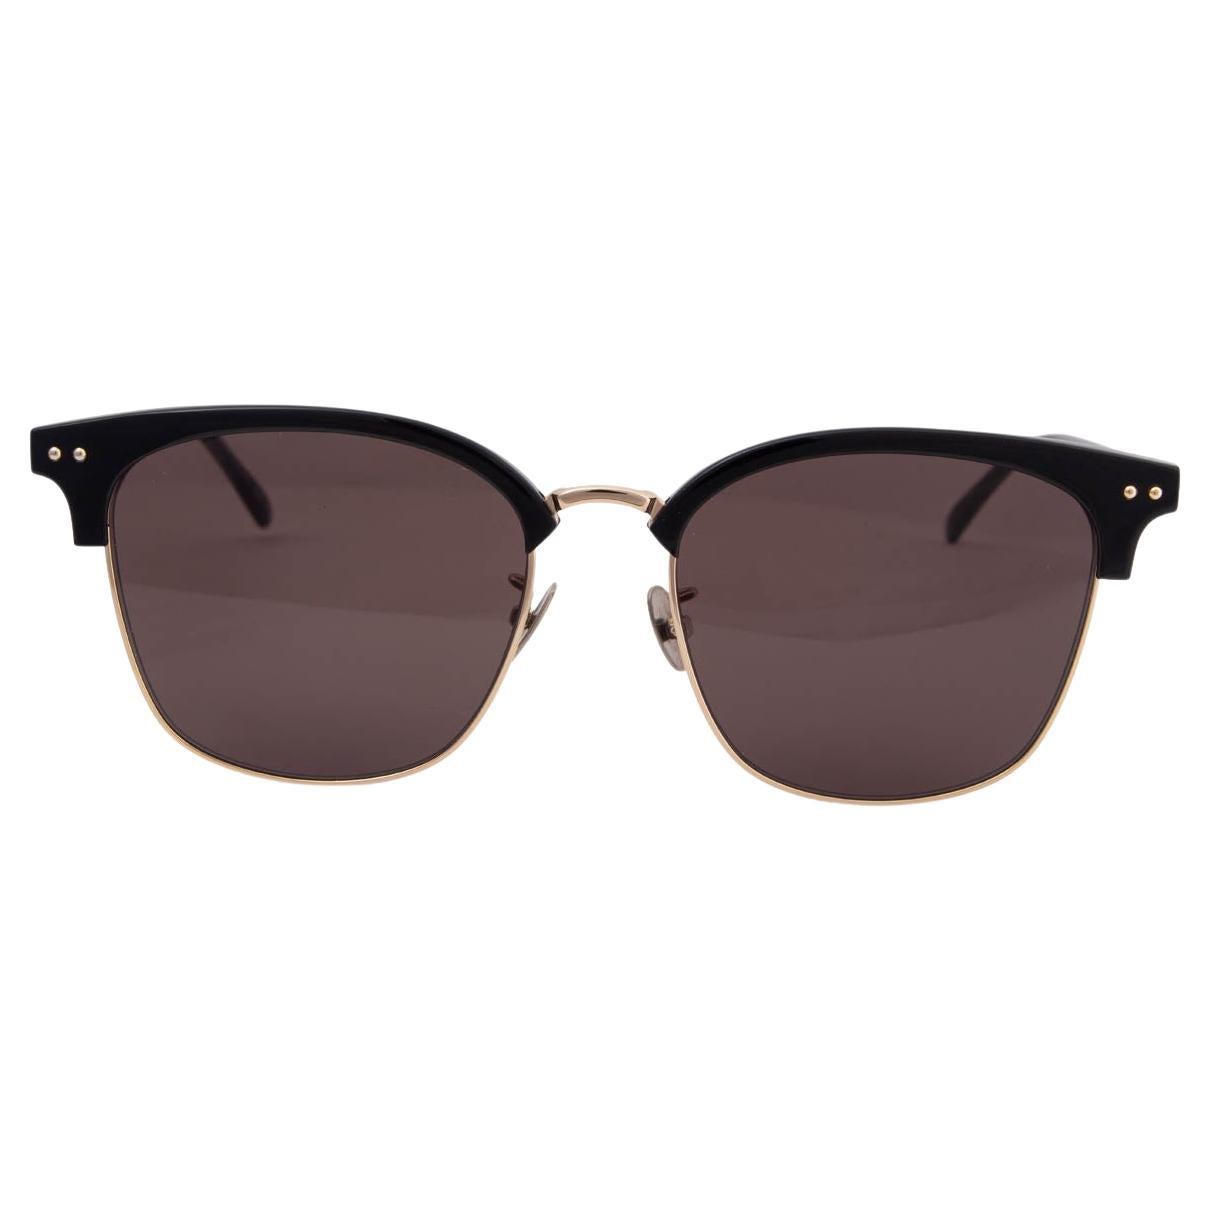 Bottega Veneta Half Rim Clubmaster Sunglasses